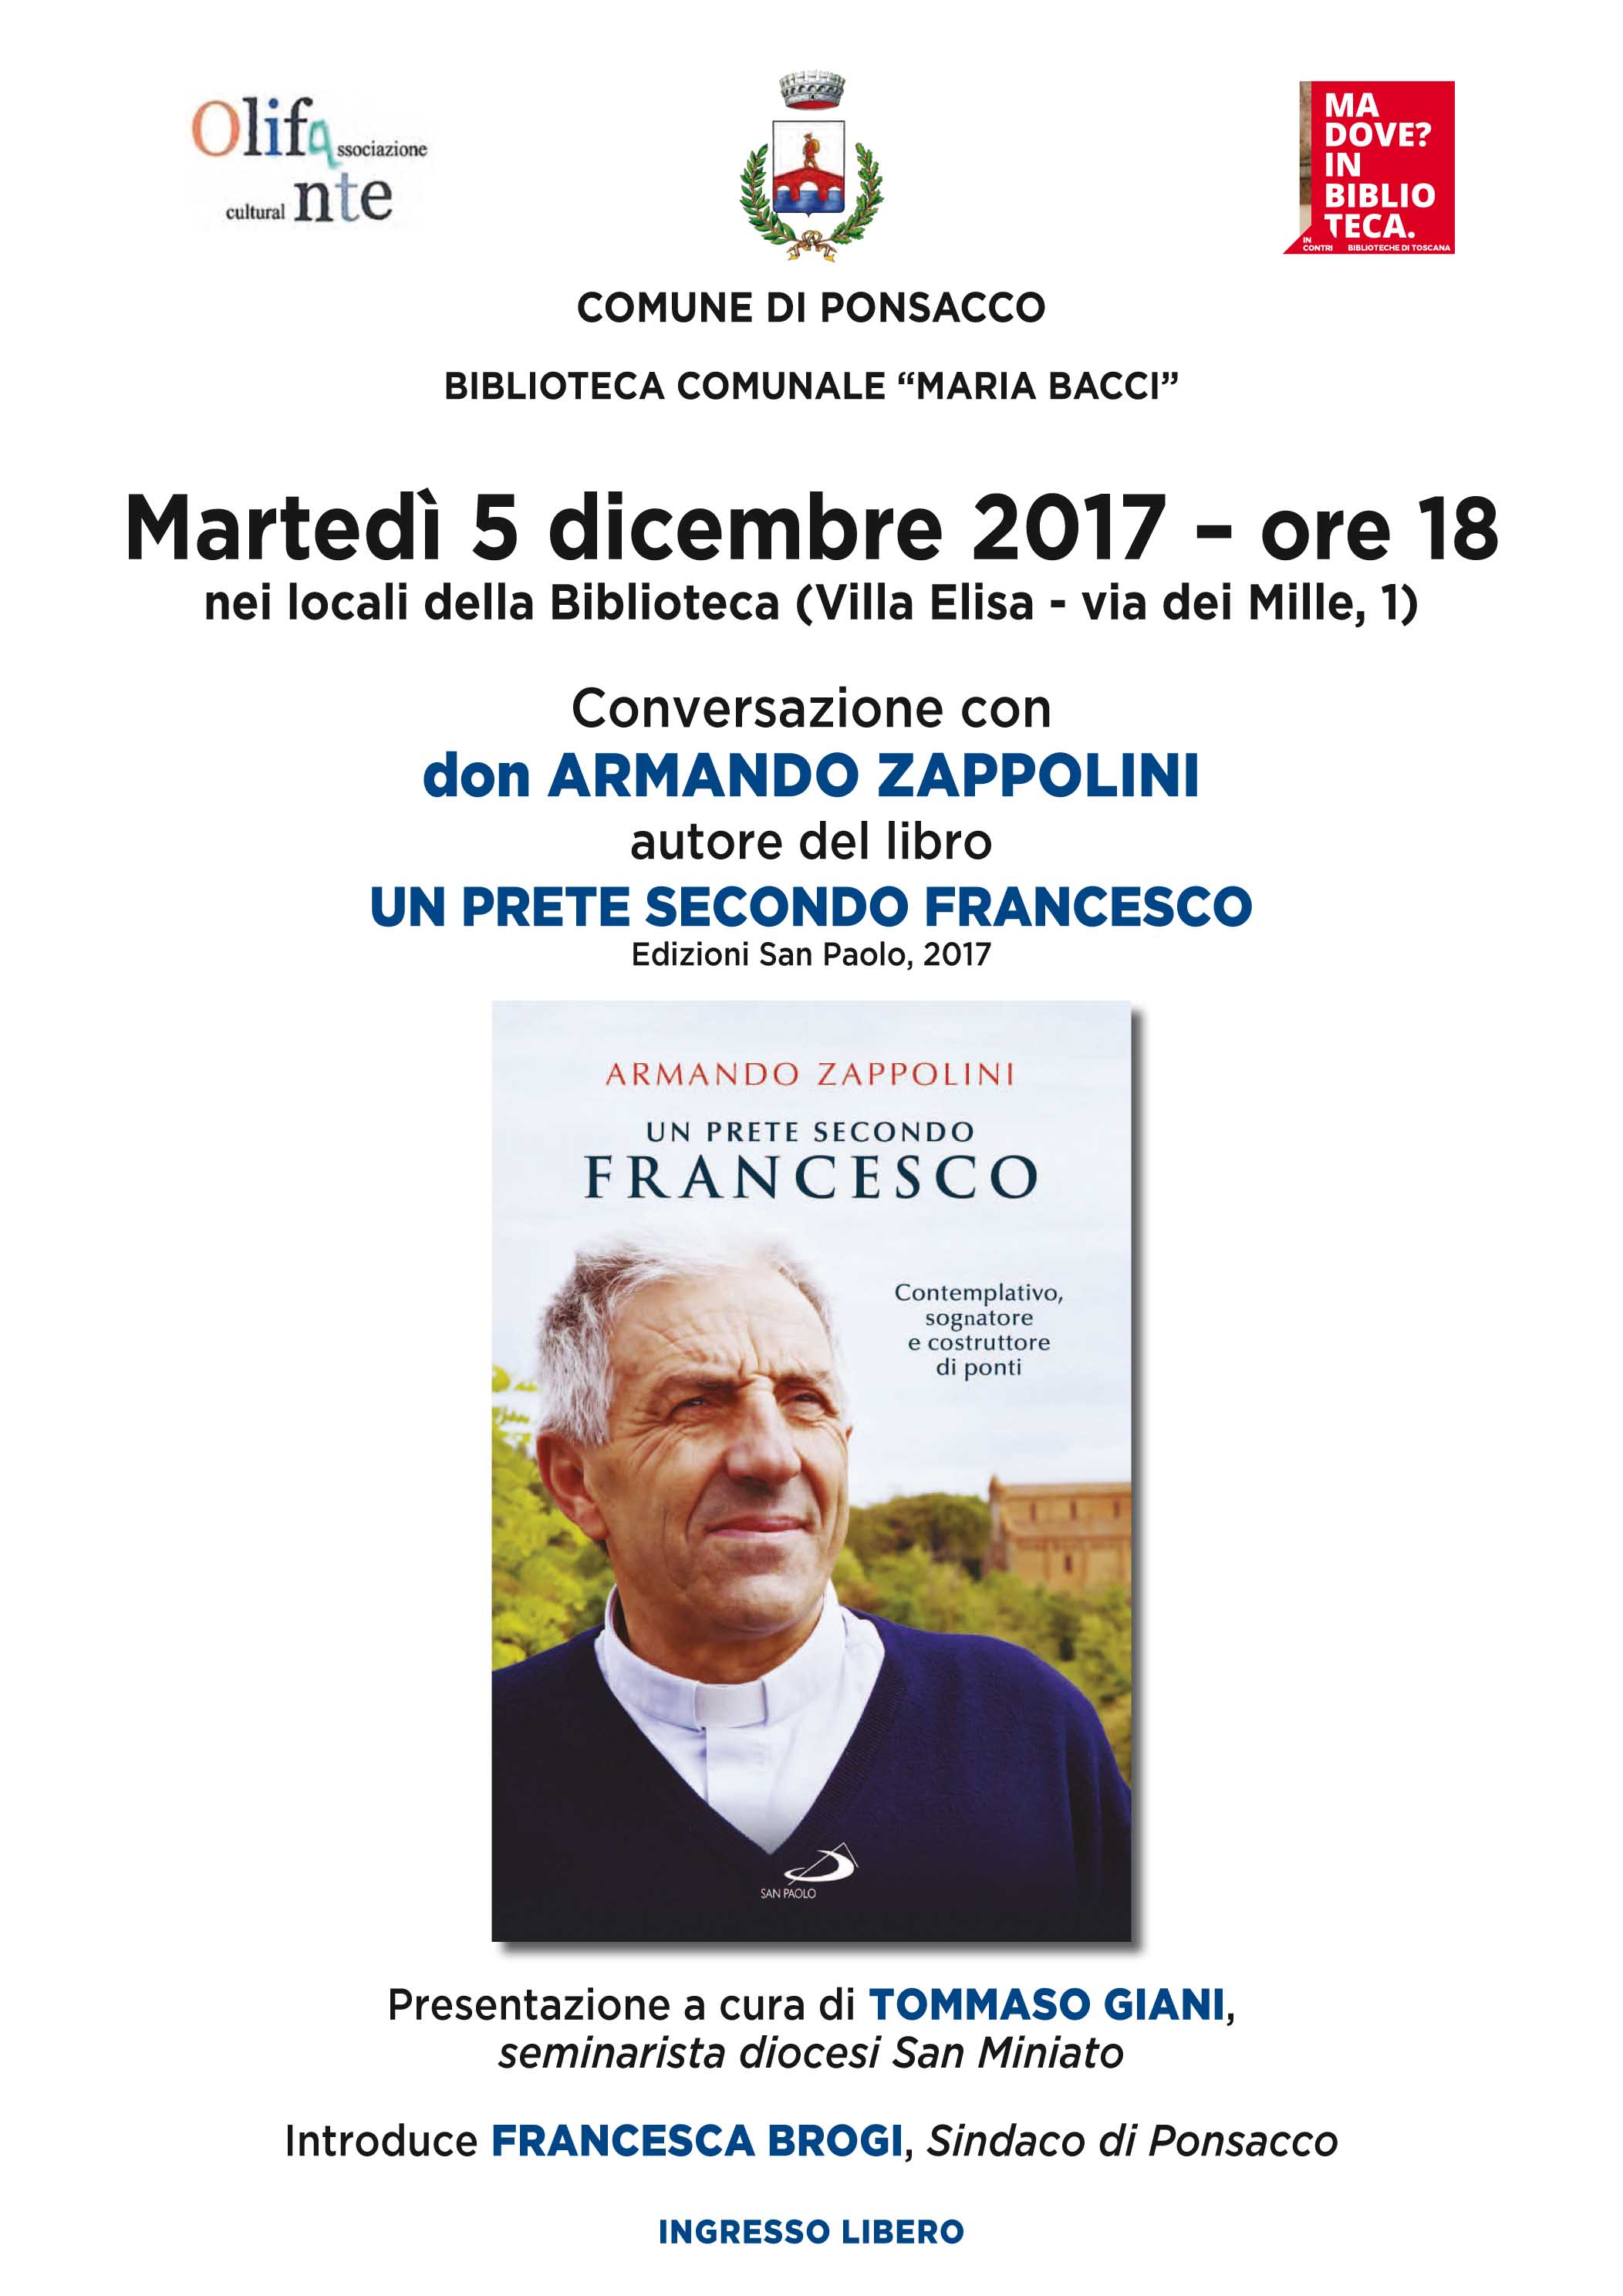 Conversazione con don Armando Zappolini autore del libro UN PRETE SECONDO FRANCESCO